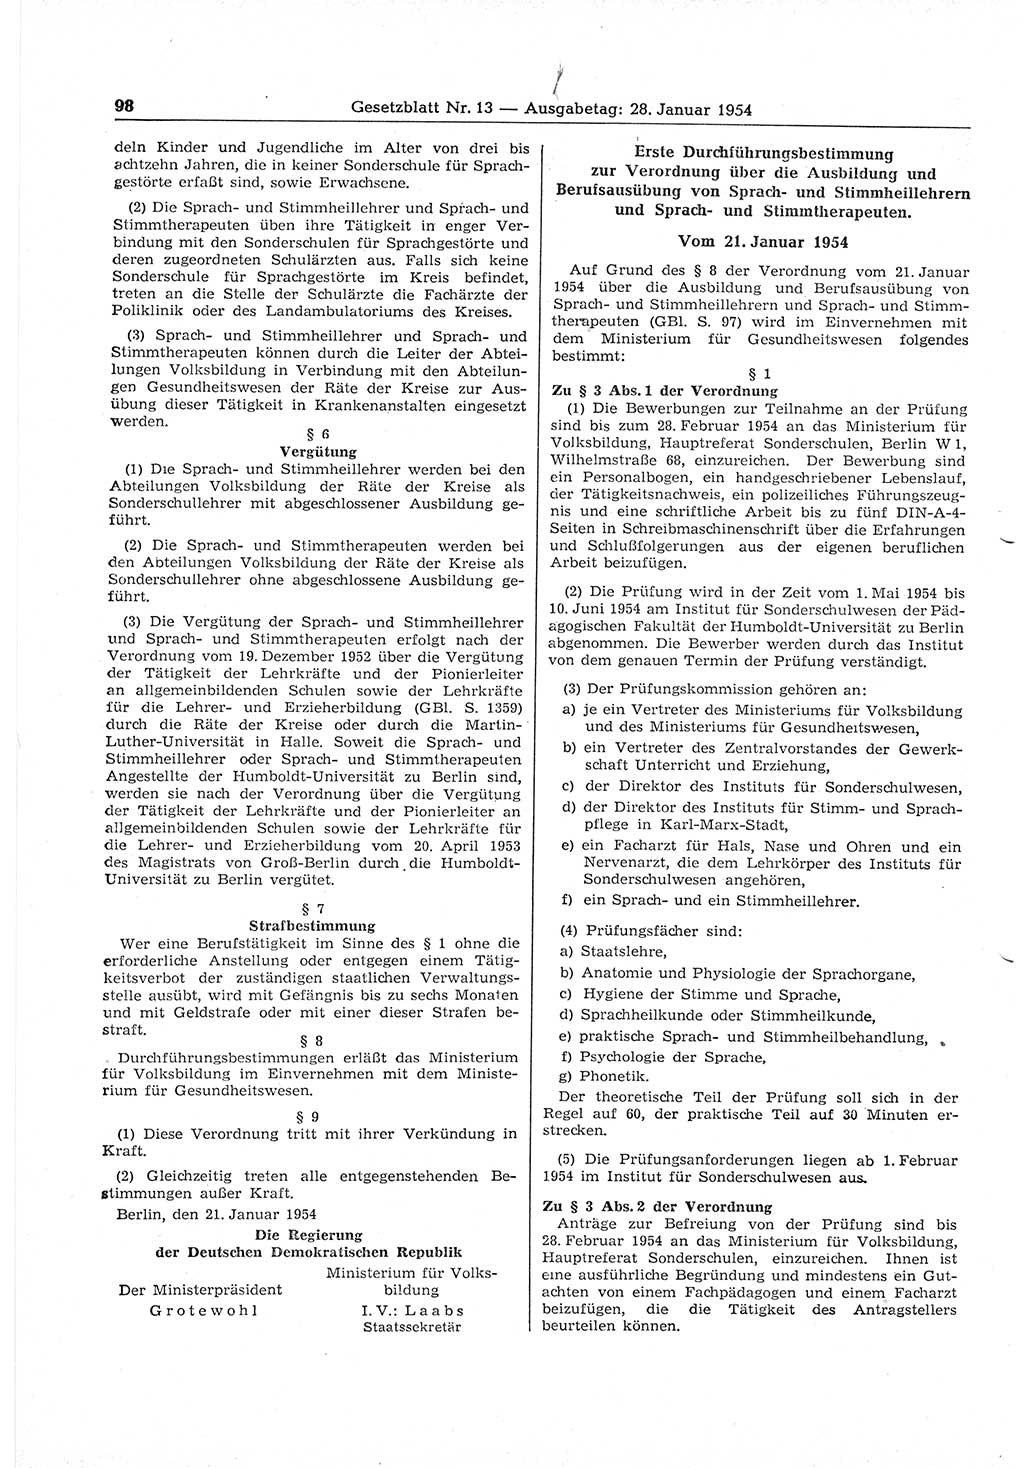 Gesetzblatt (GBl.) der Deutschen Demokratischen Republik (DDR) 1954, Seite 98 (GBl. DDR 1954, S. 98)